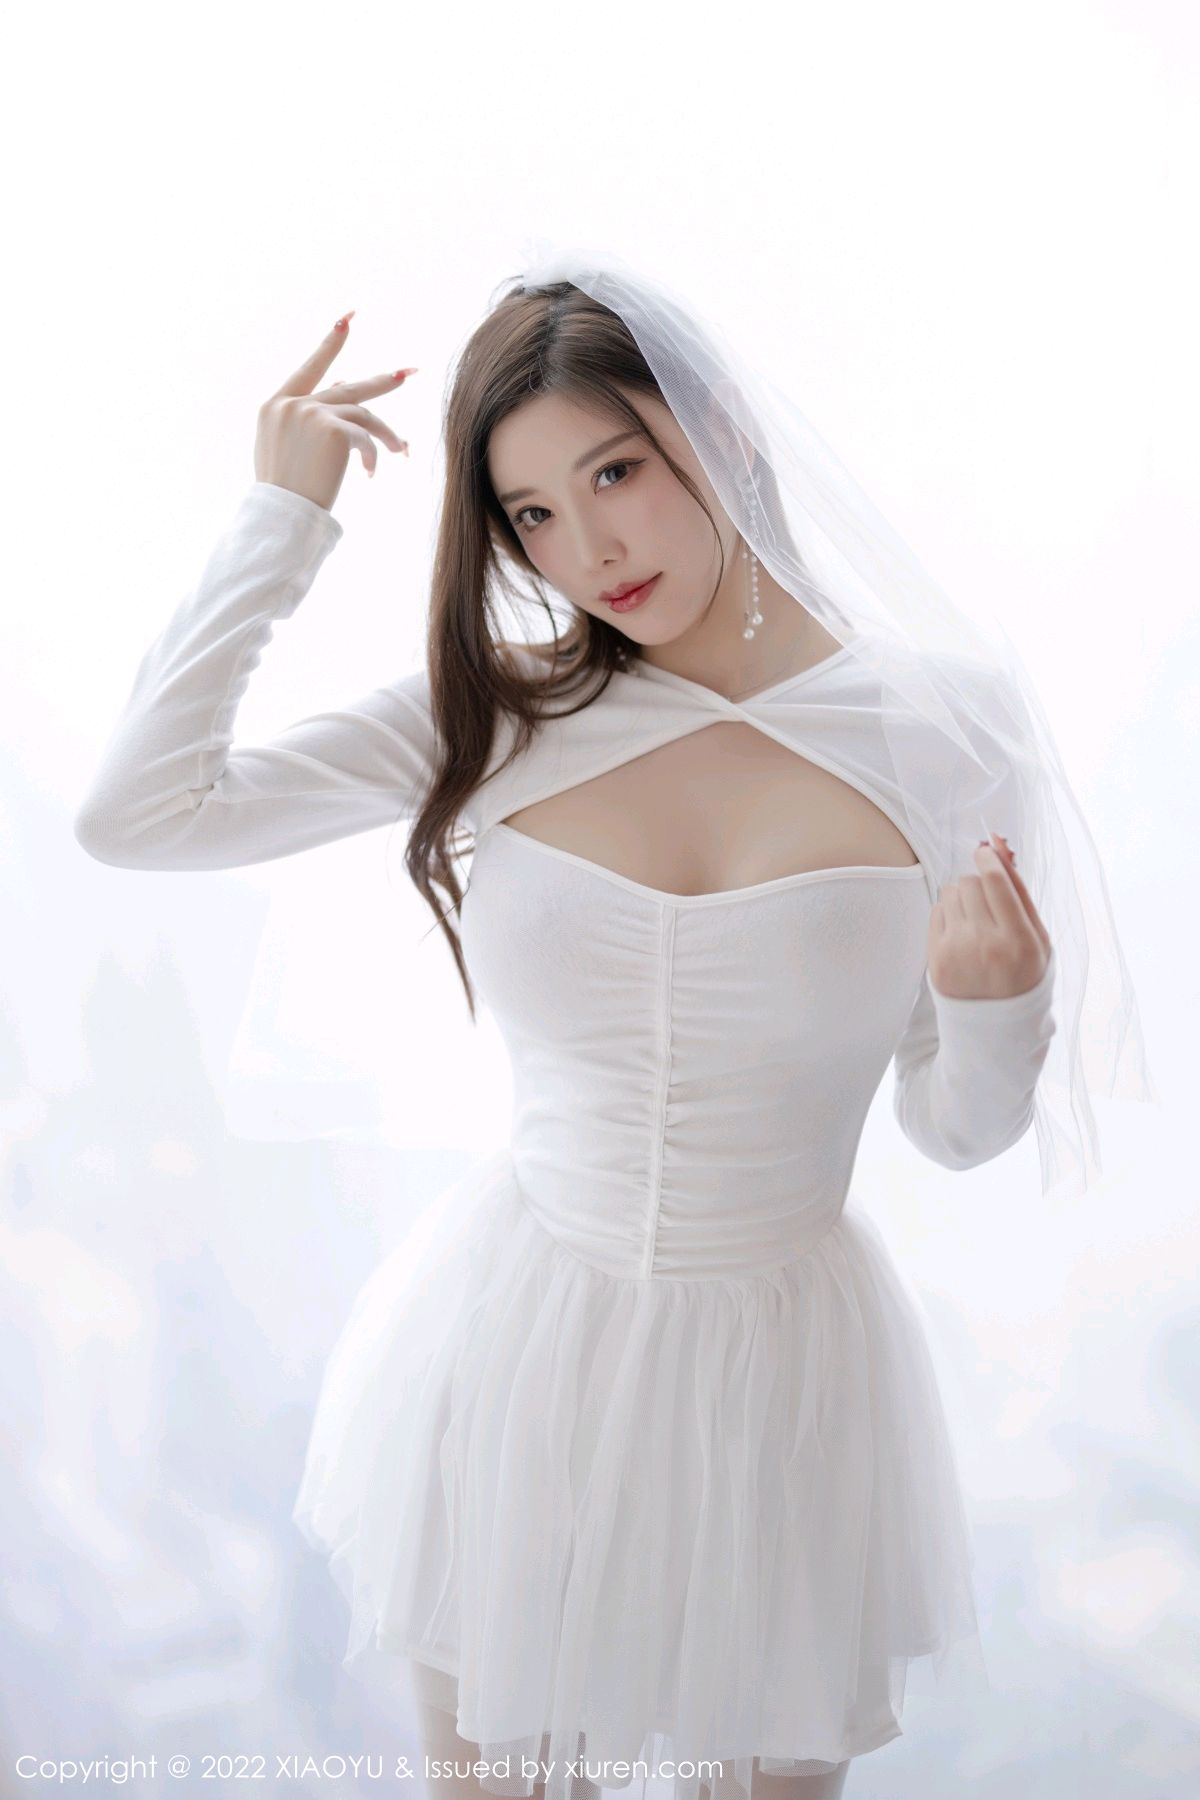 [XIAOYU语画界]-Vol.739-杨晨晨Yome-白色婚纱服饰搭配白色丝袜-套图之家